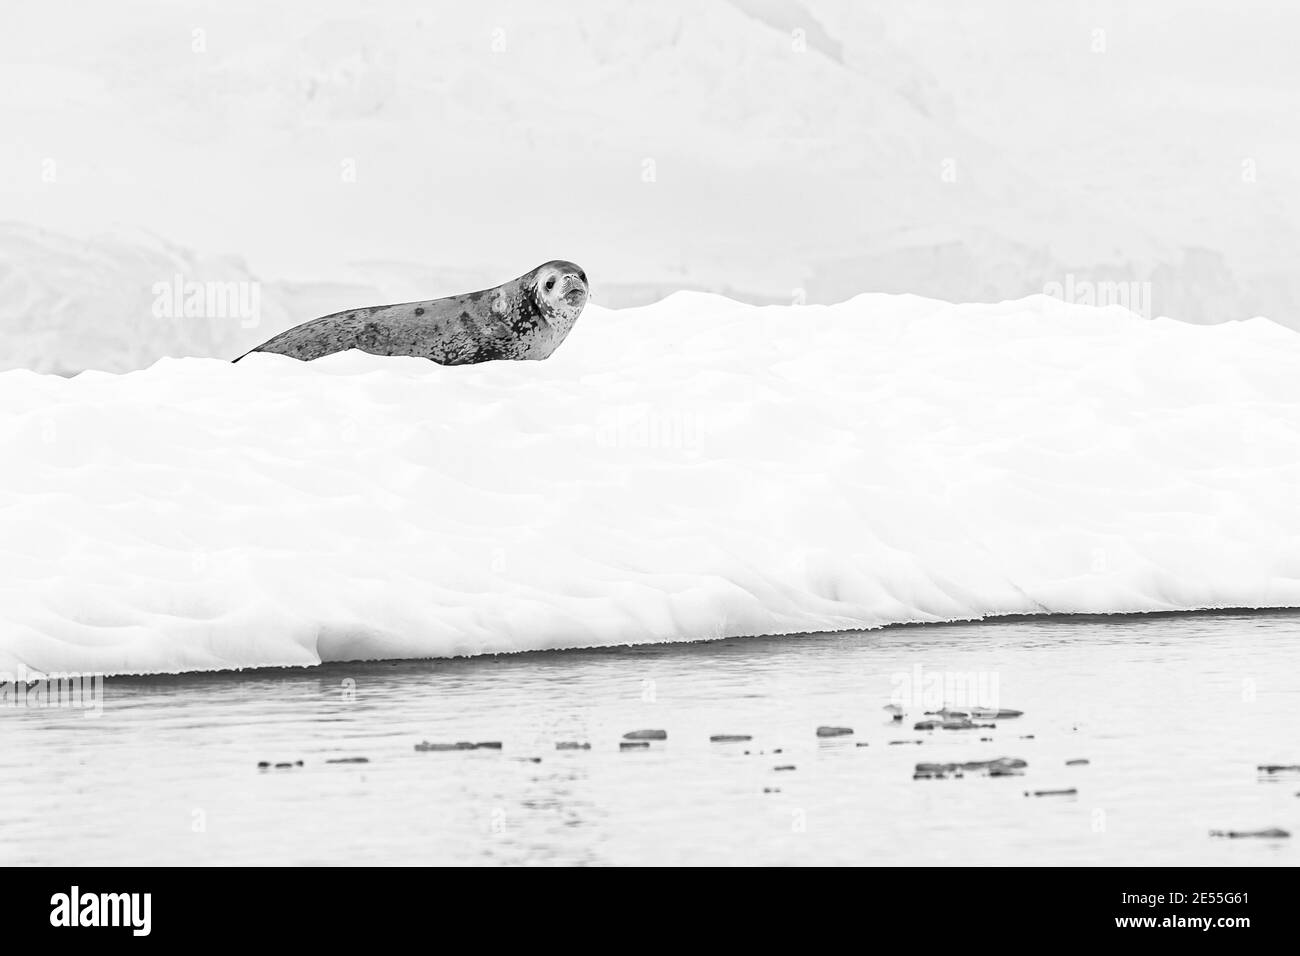 Eine einbeinige Krabbenrobbe ruht auf einem kleinen Eisberg, der mit Schnee bedeckt ist. Schwarzweiß-Foto. Stockfoto